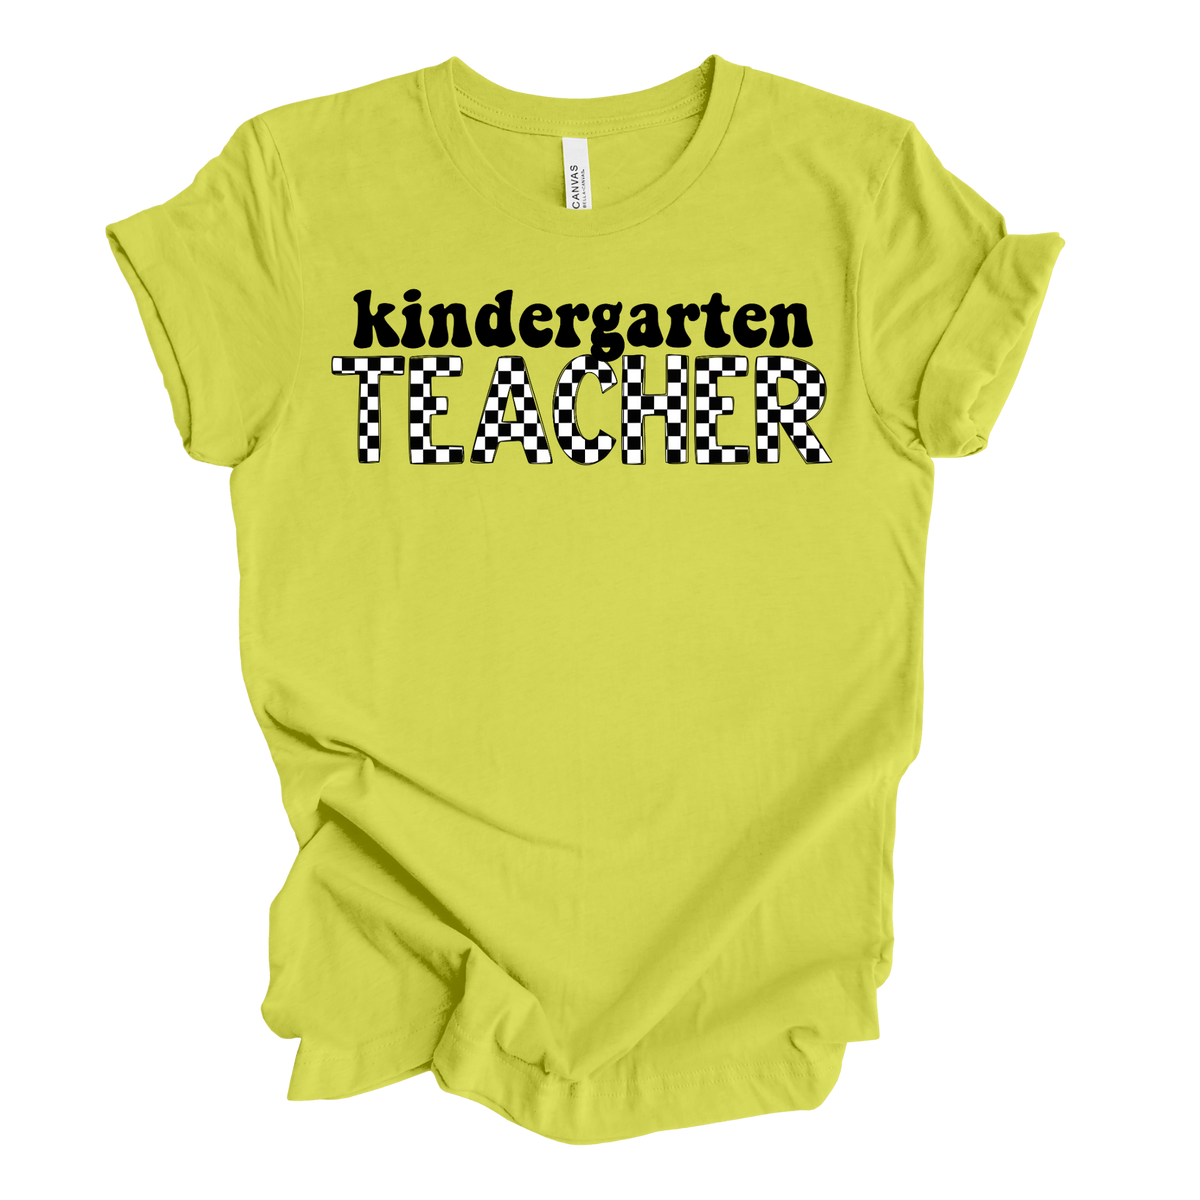 Checkered Kindergarten Tee